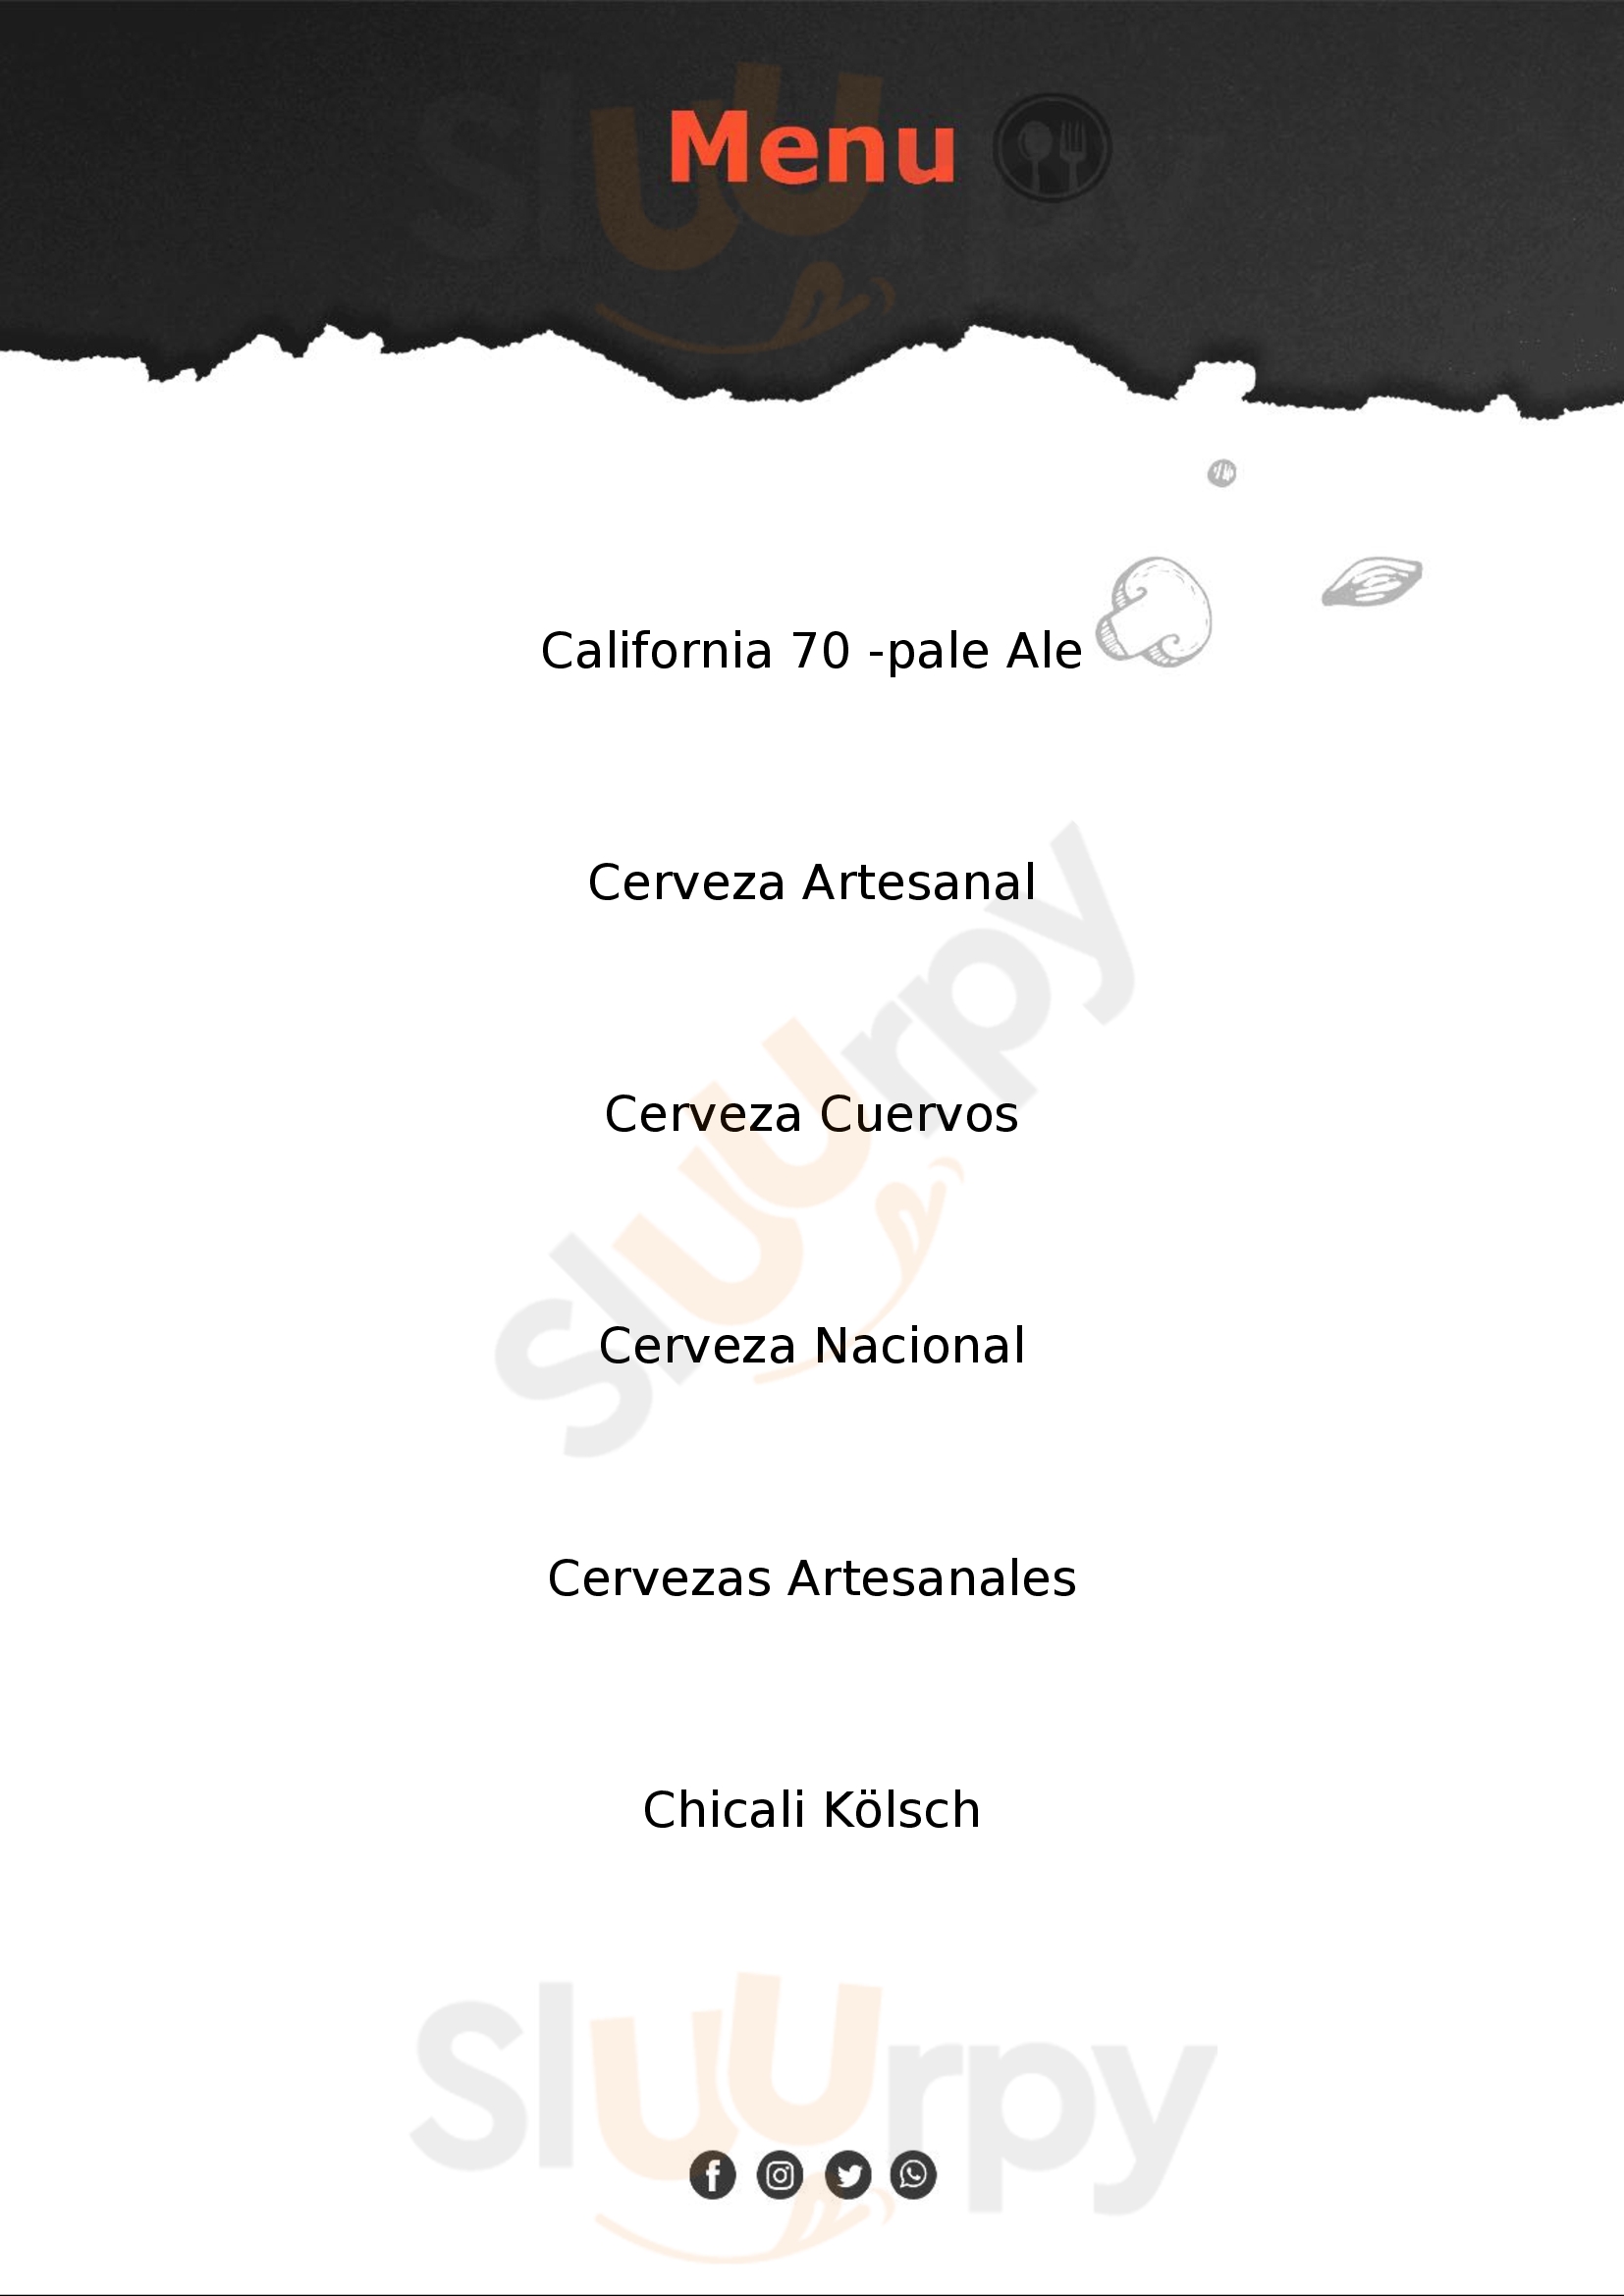 Cervecería Icono Mexicali Menu - 1